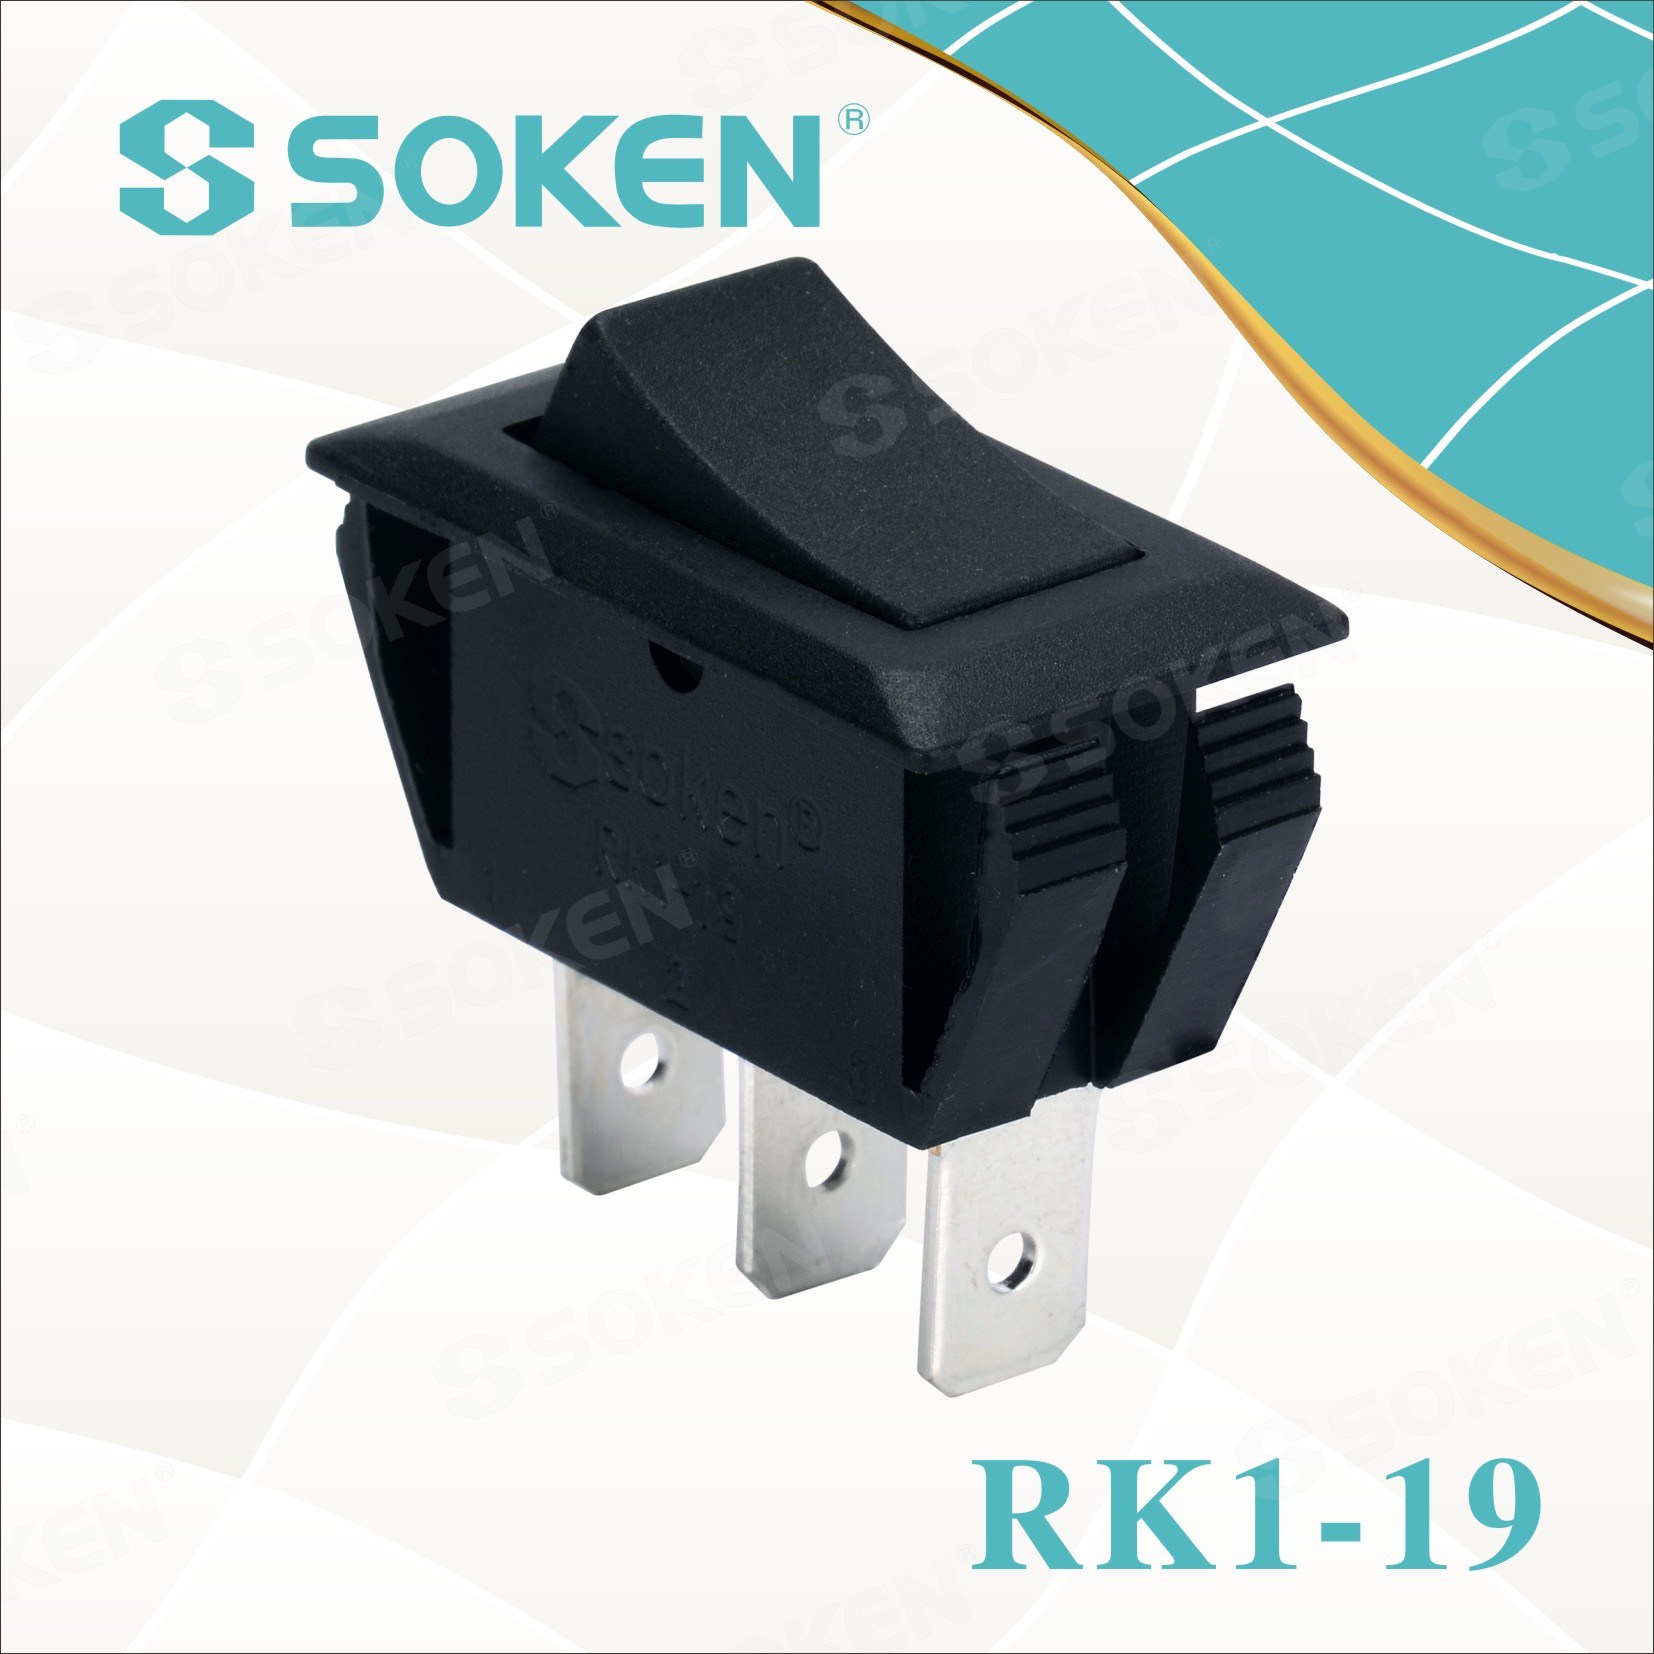 Soken Rk1-19 1X2 on on Rocker Switch